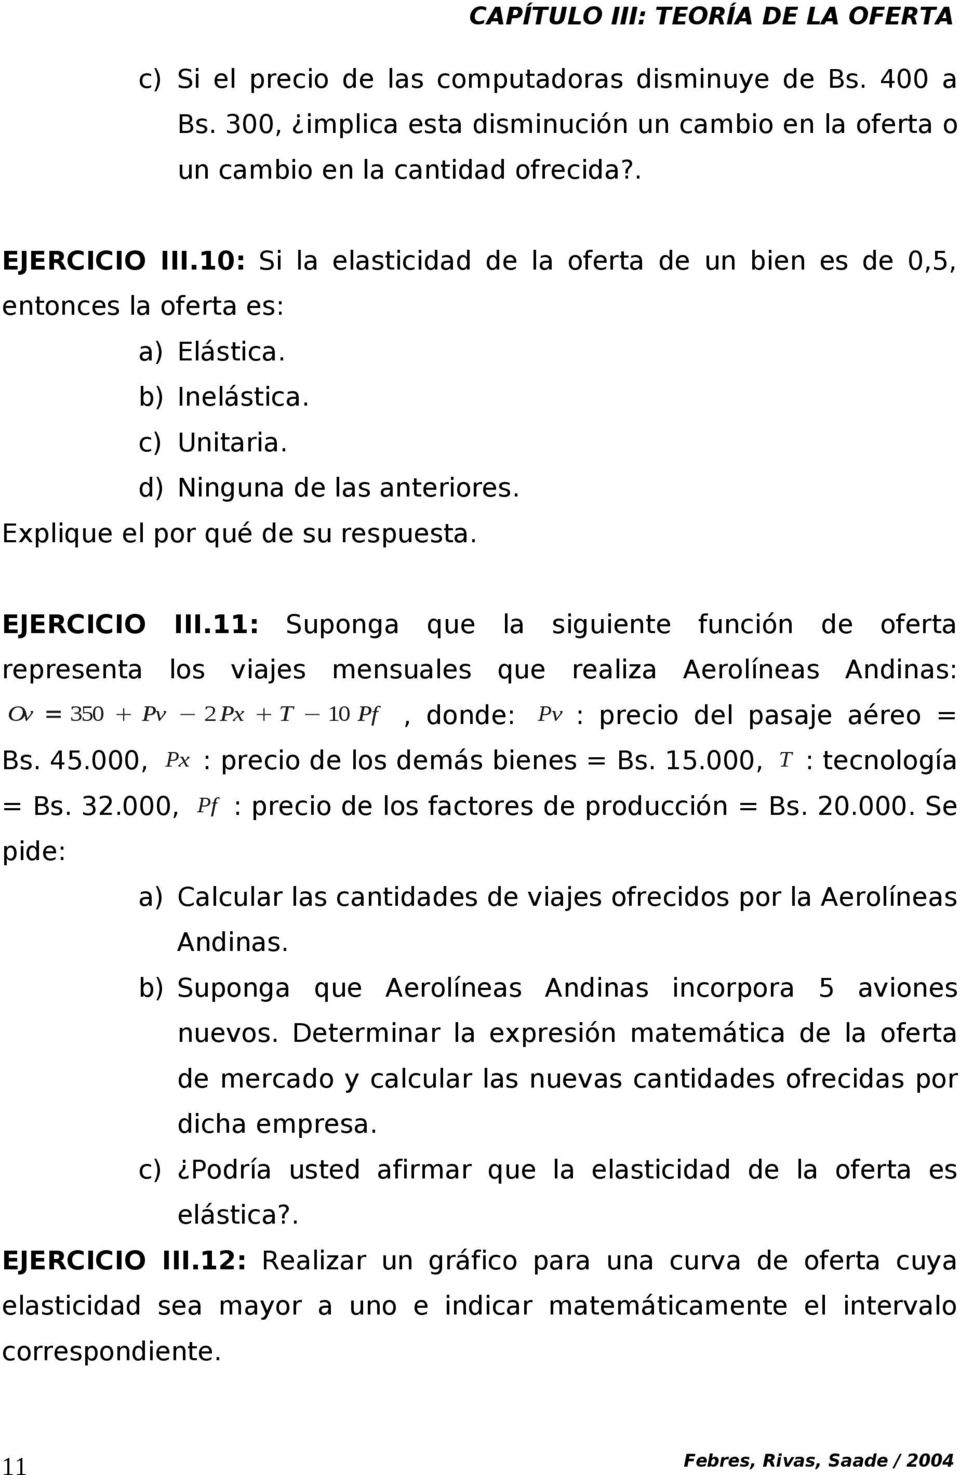 EJERCICIO III.: Suponga que la siguiente función de oferta representa los viajes mensuales que realiza Aerolíneas Andinas: Ov = 350 Pv 2Px T 10 Pf, donde: Pv : precio del pasaje aéreo = Bs. 45.